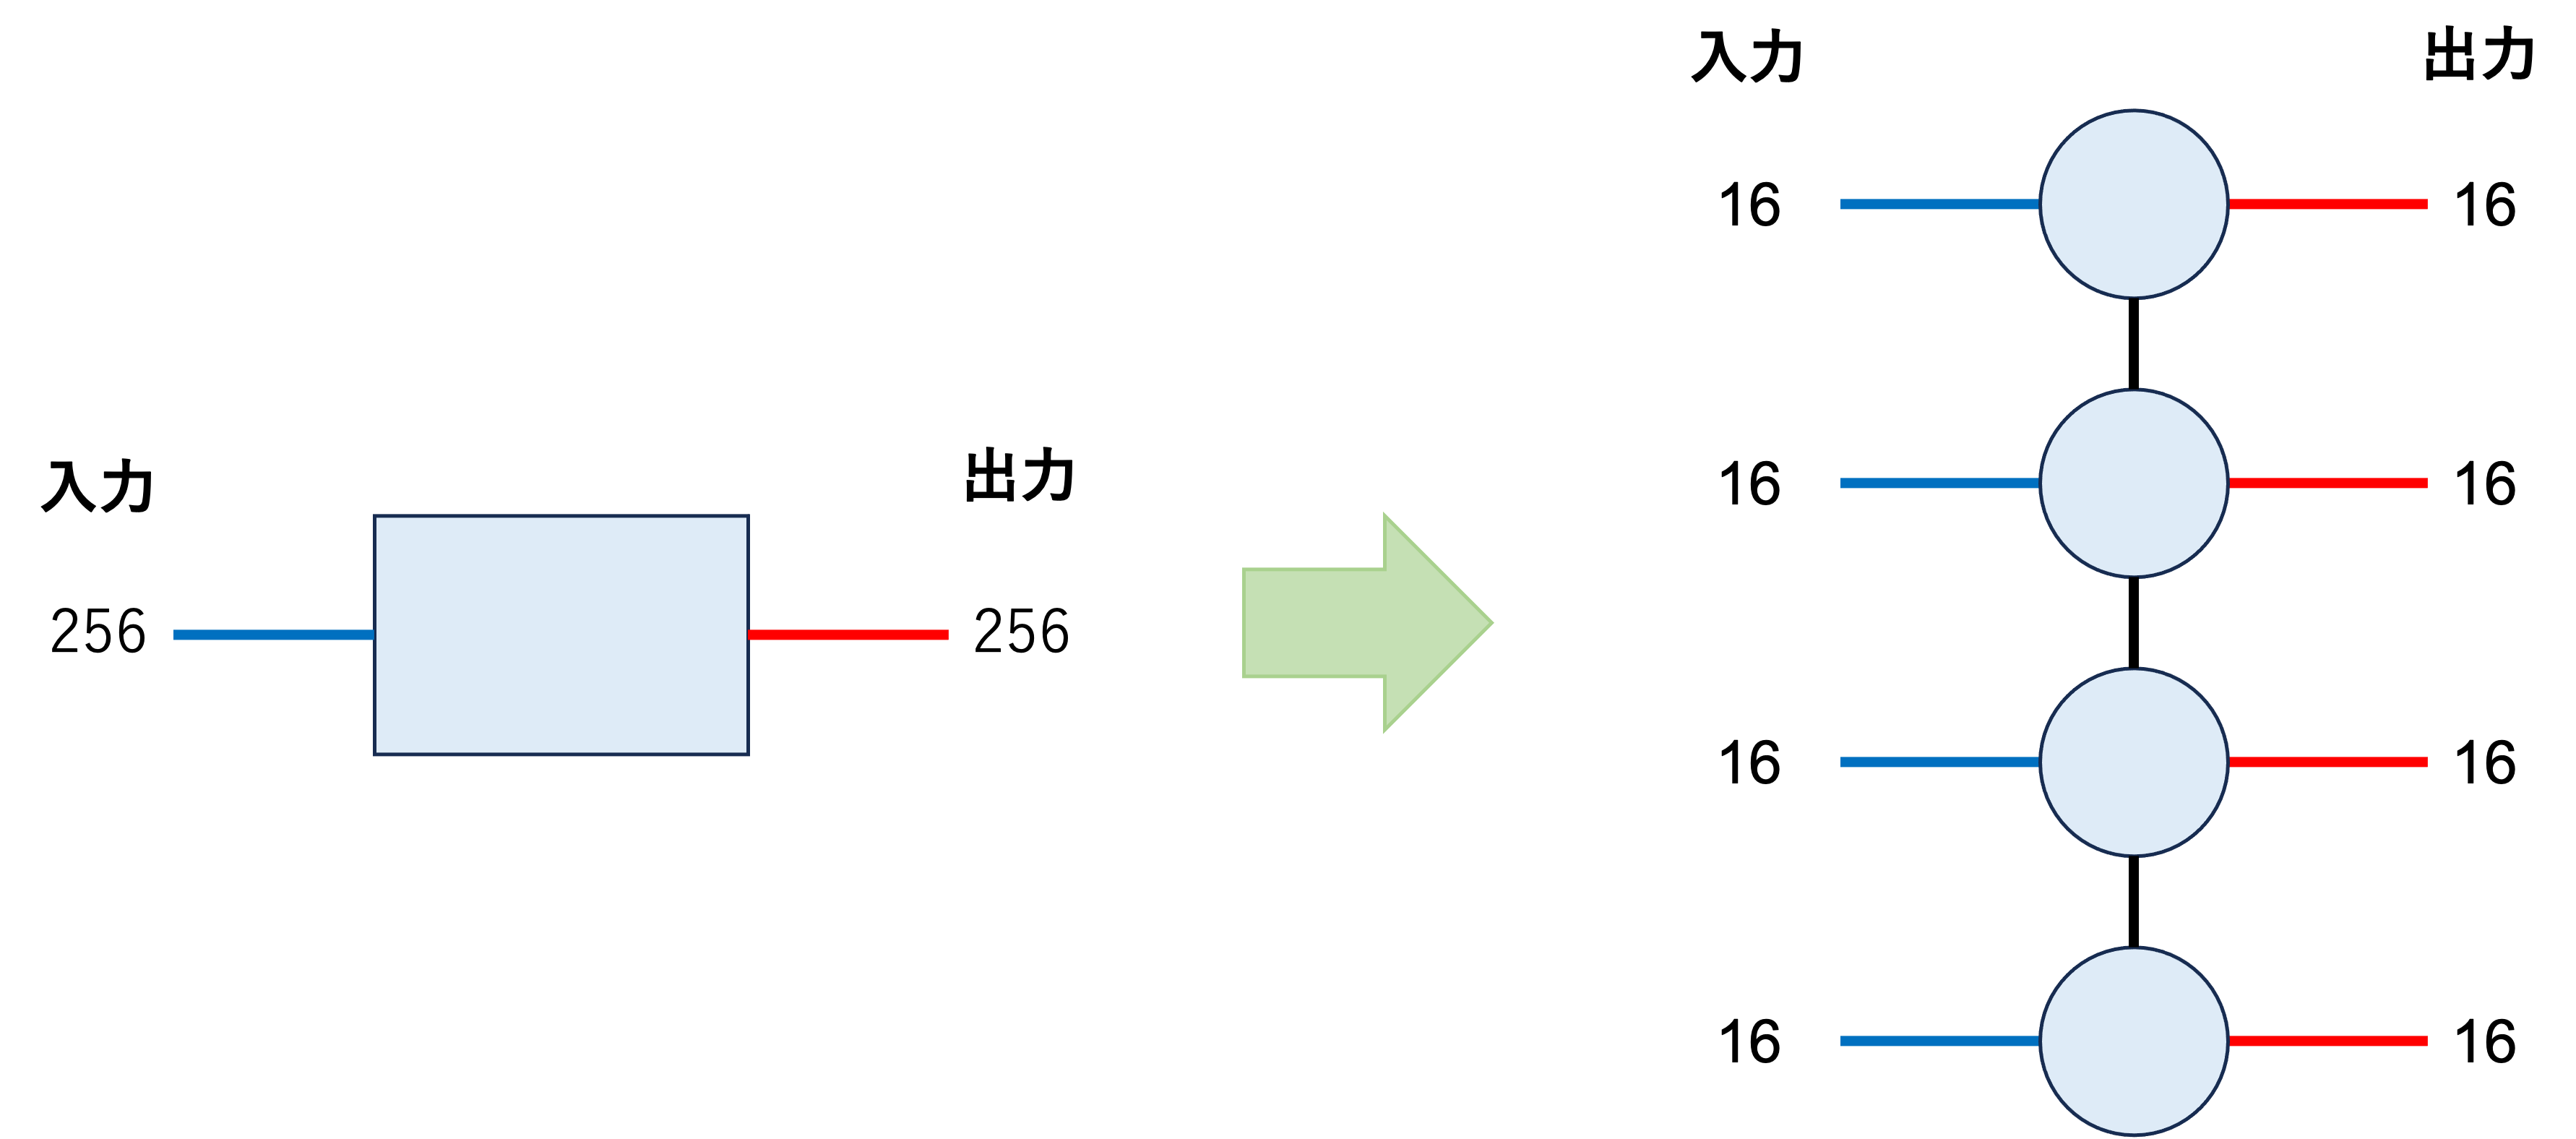 行列積演算子への変換のイメージ図